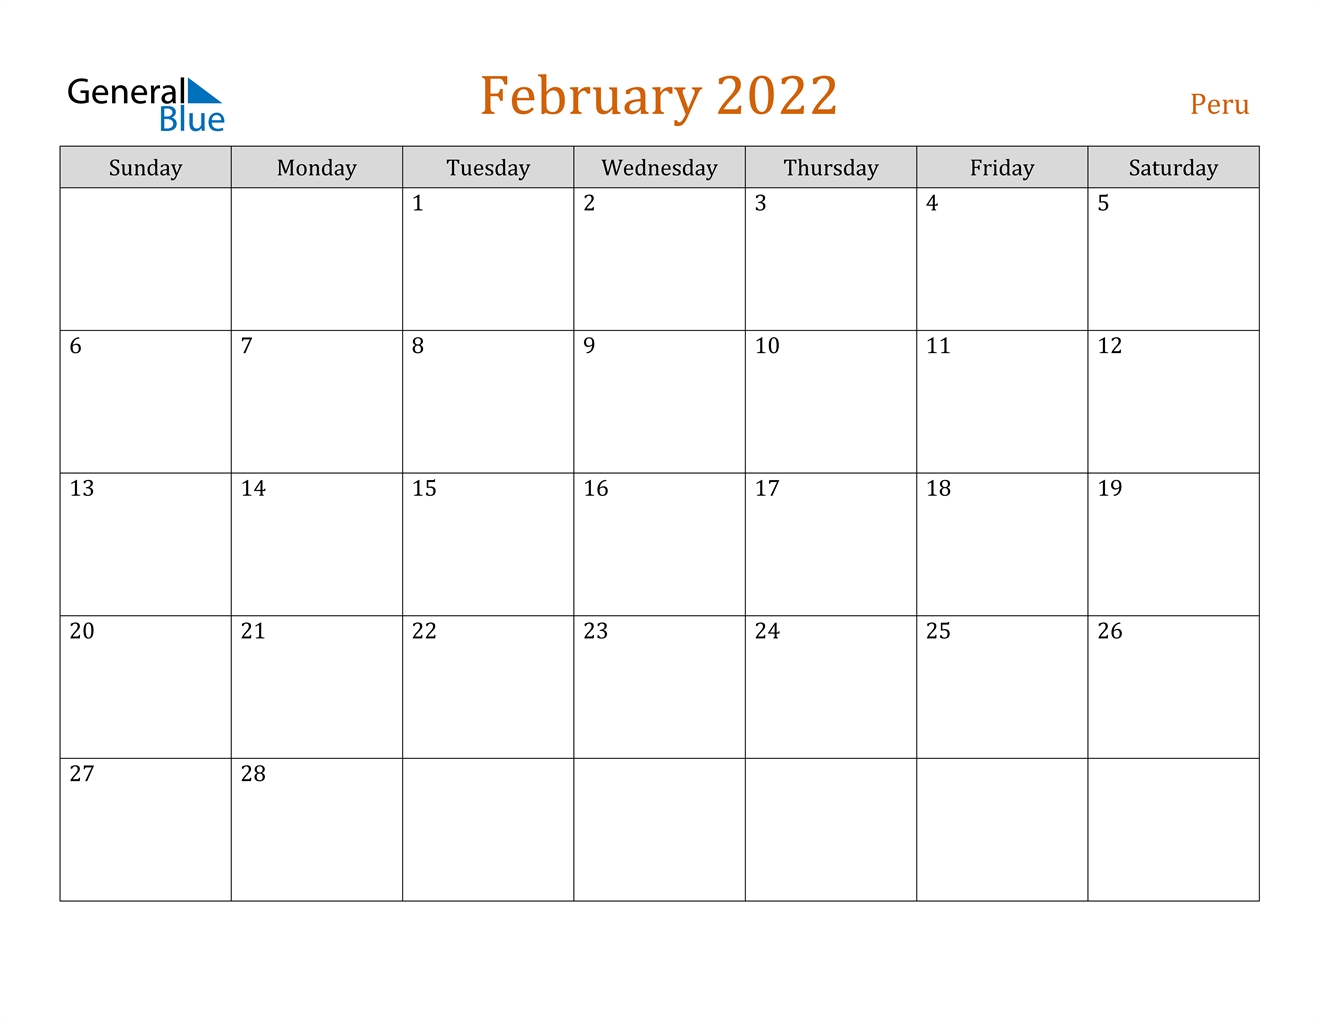 February 2022 Calendar - Peru